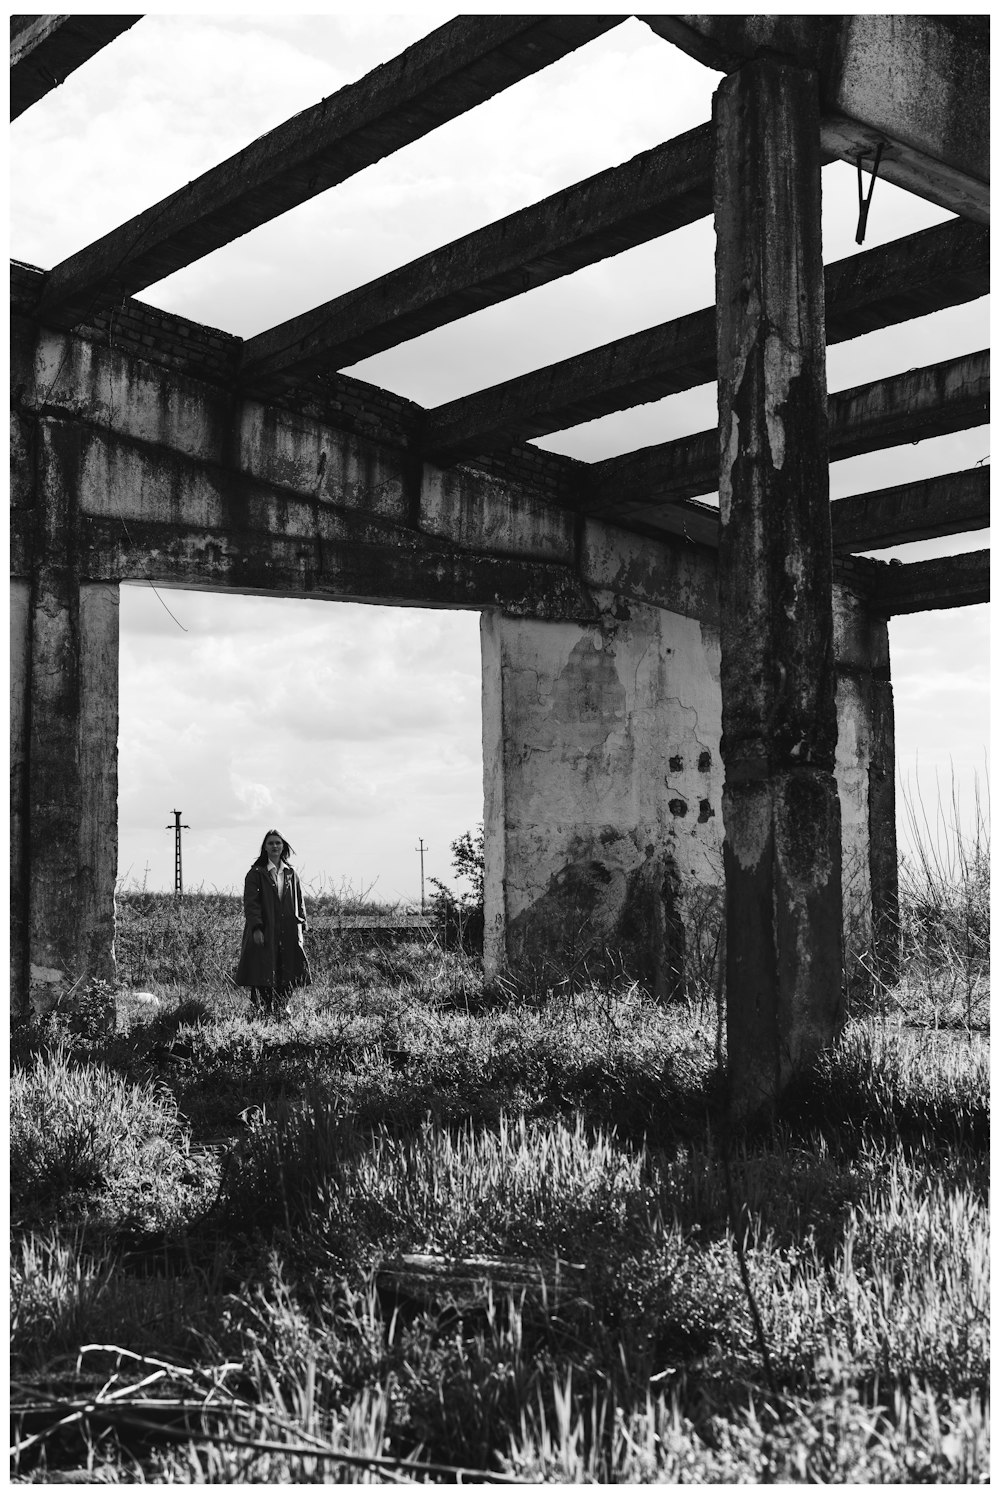 橋の下に立っている人の白黒写真